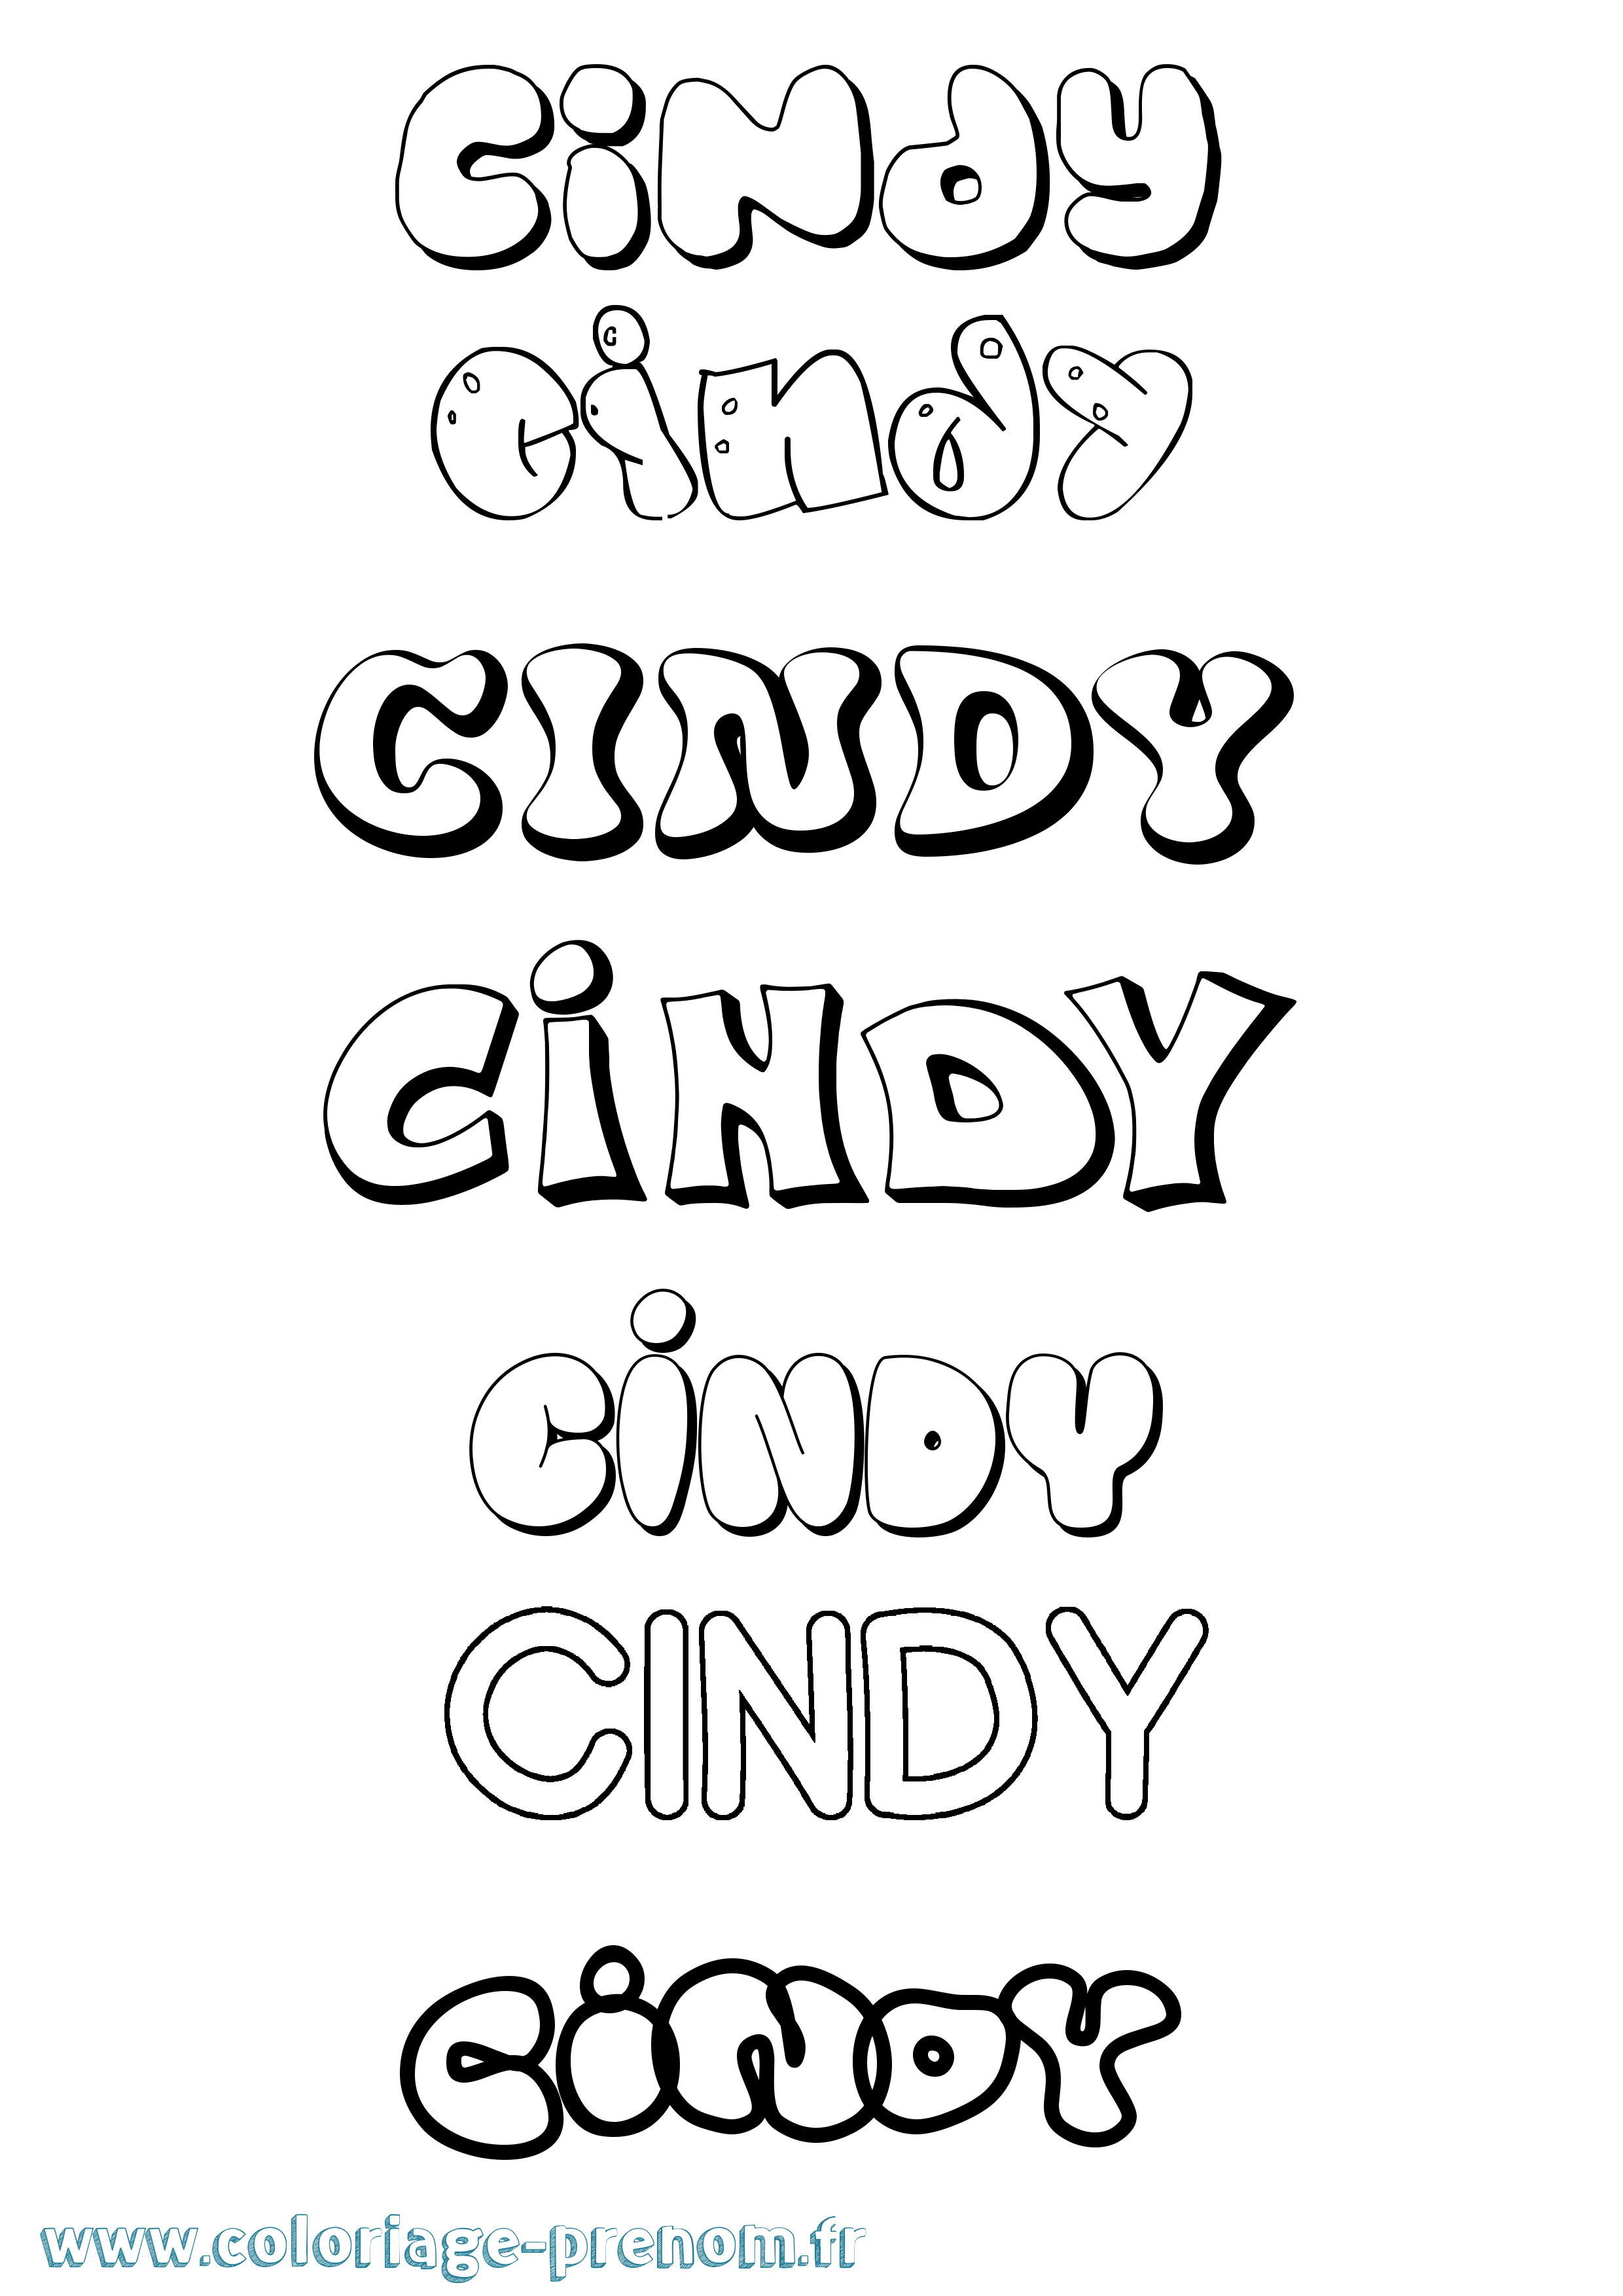 Coloriage prénom Cindy Bubble